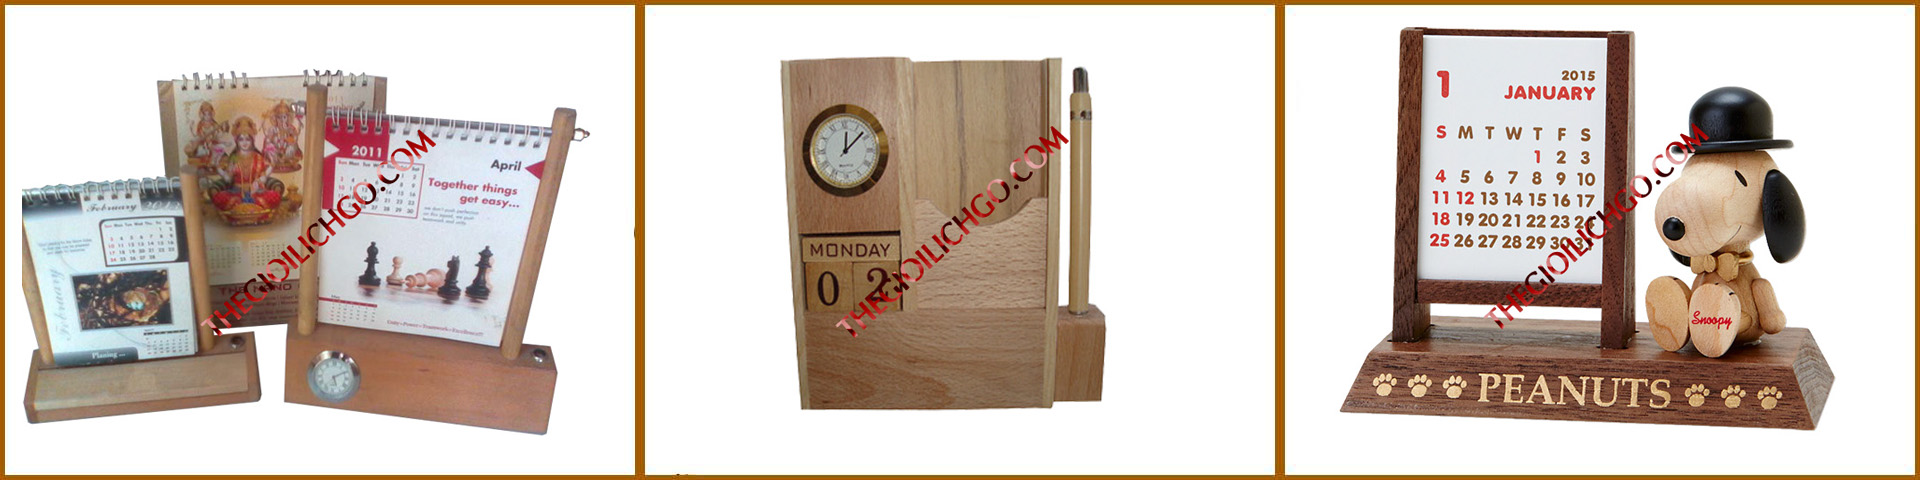 hộp lịch gỗ để bàn cao cấp 1